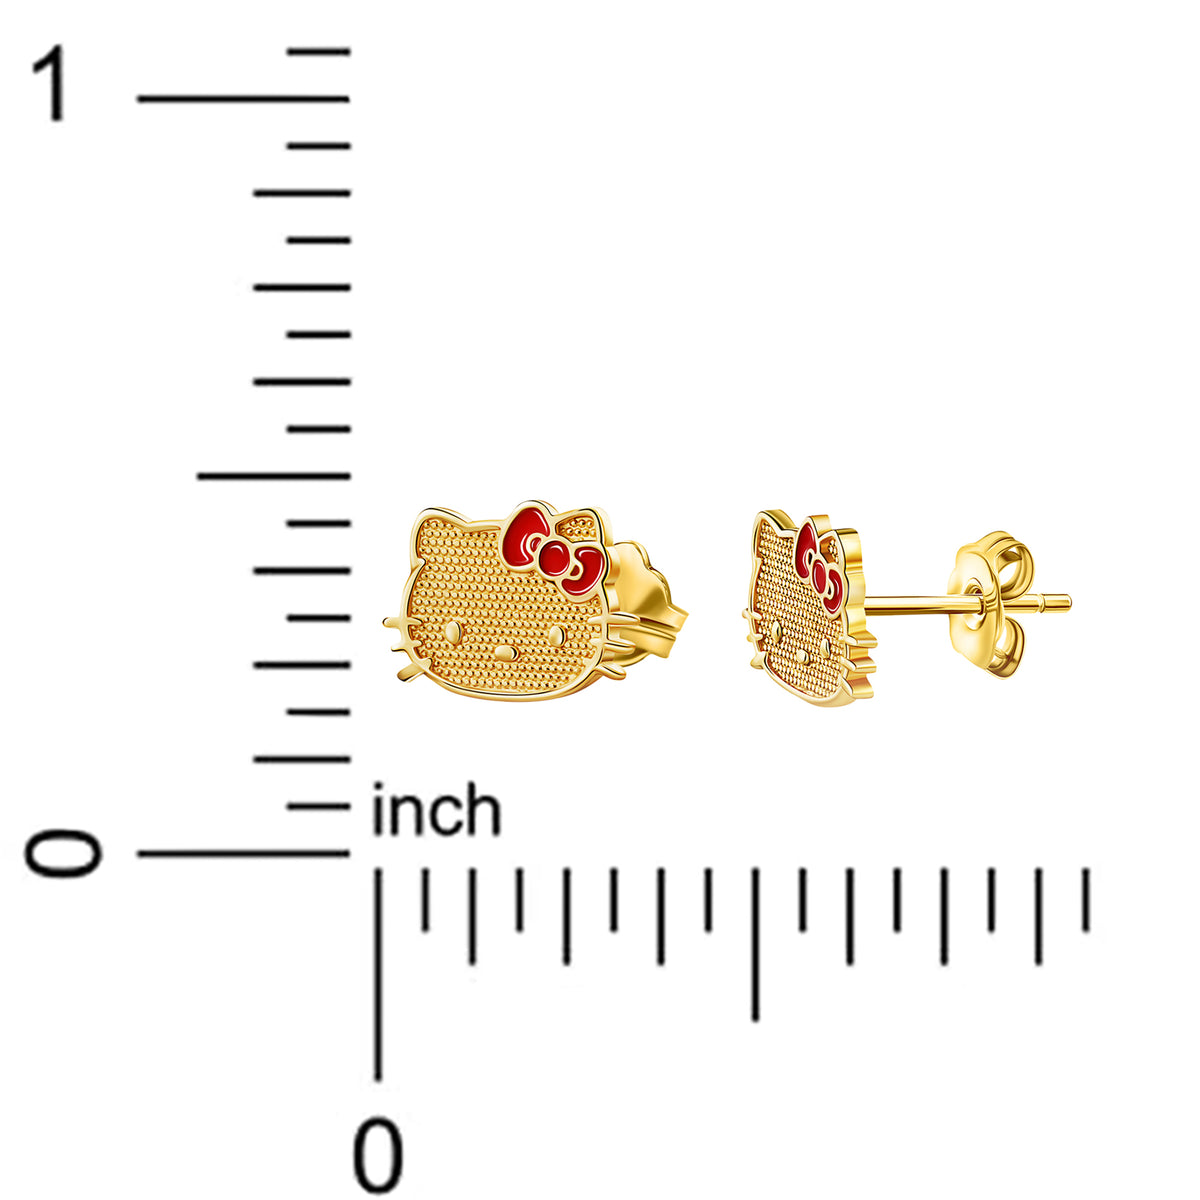 Hello Kitty 10K Yellow Gold Stud Earrings With Enamel Bow Jewelry JACMEL JEWELRY INC   